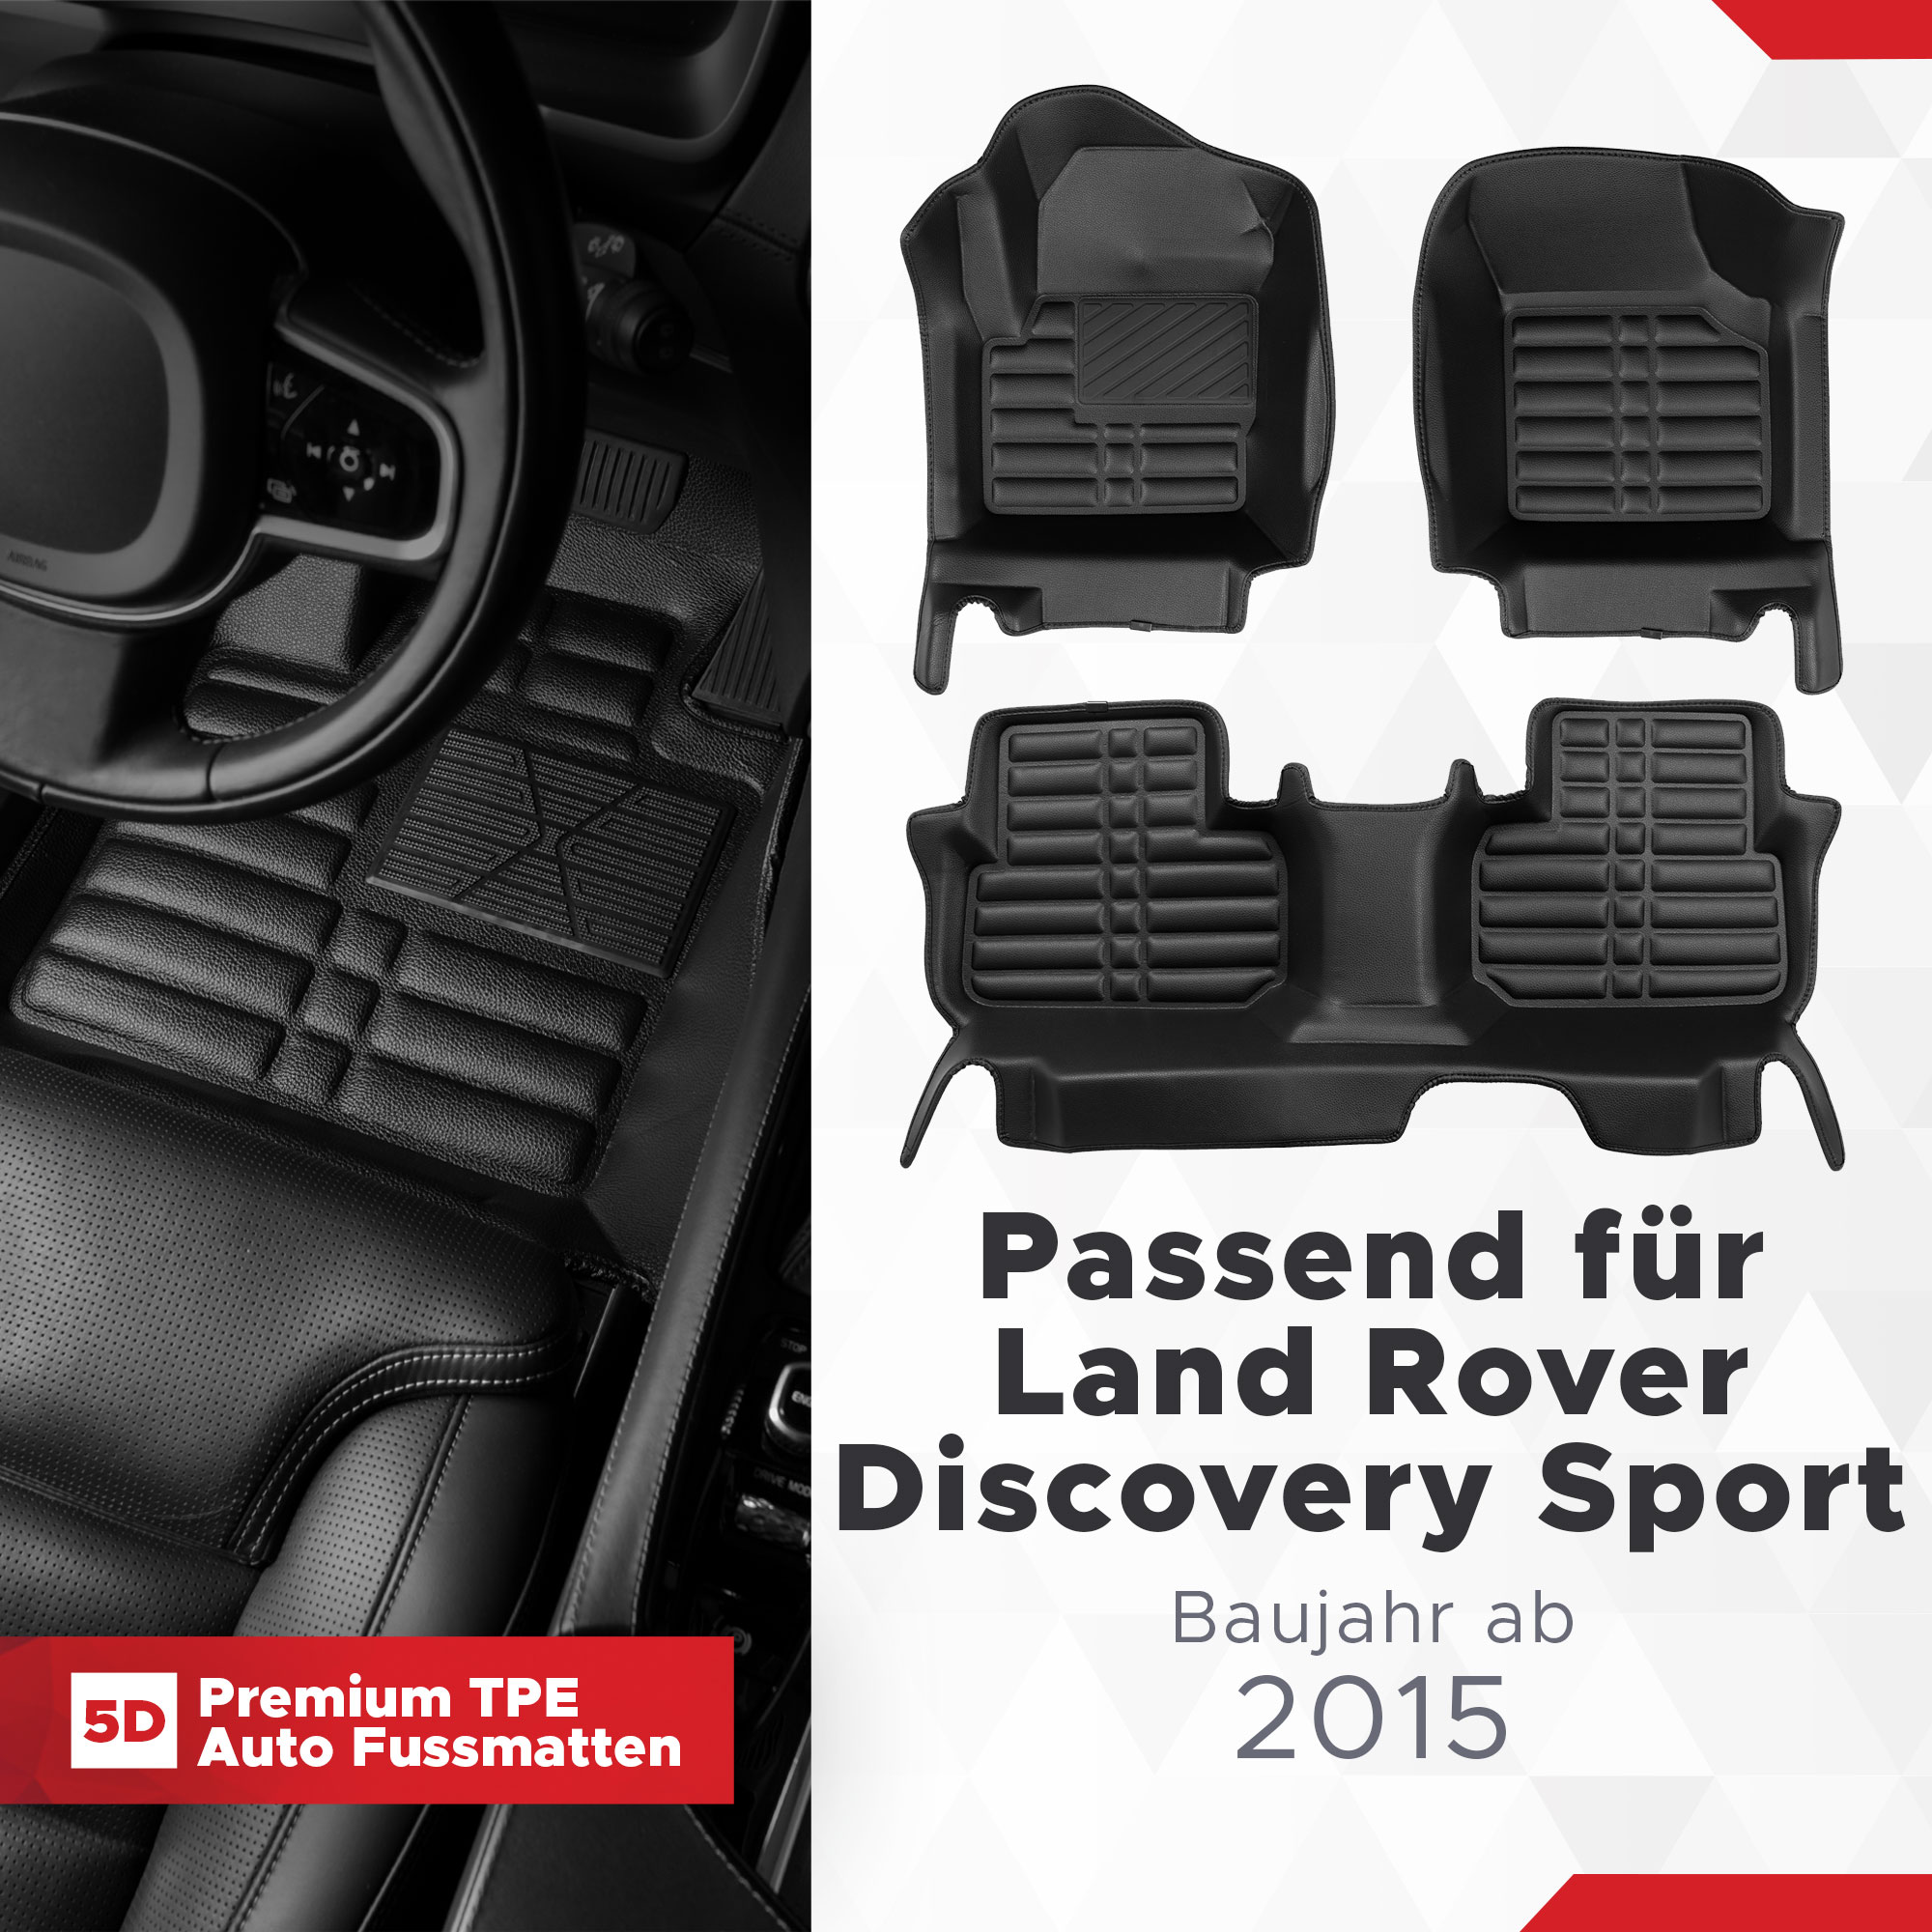 Bj Rover 5D 2015 Discovery TPE Land ab Sport Fussmatten